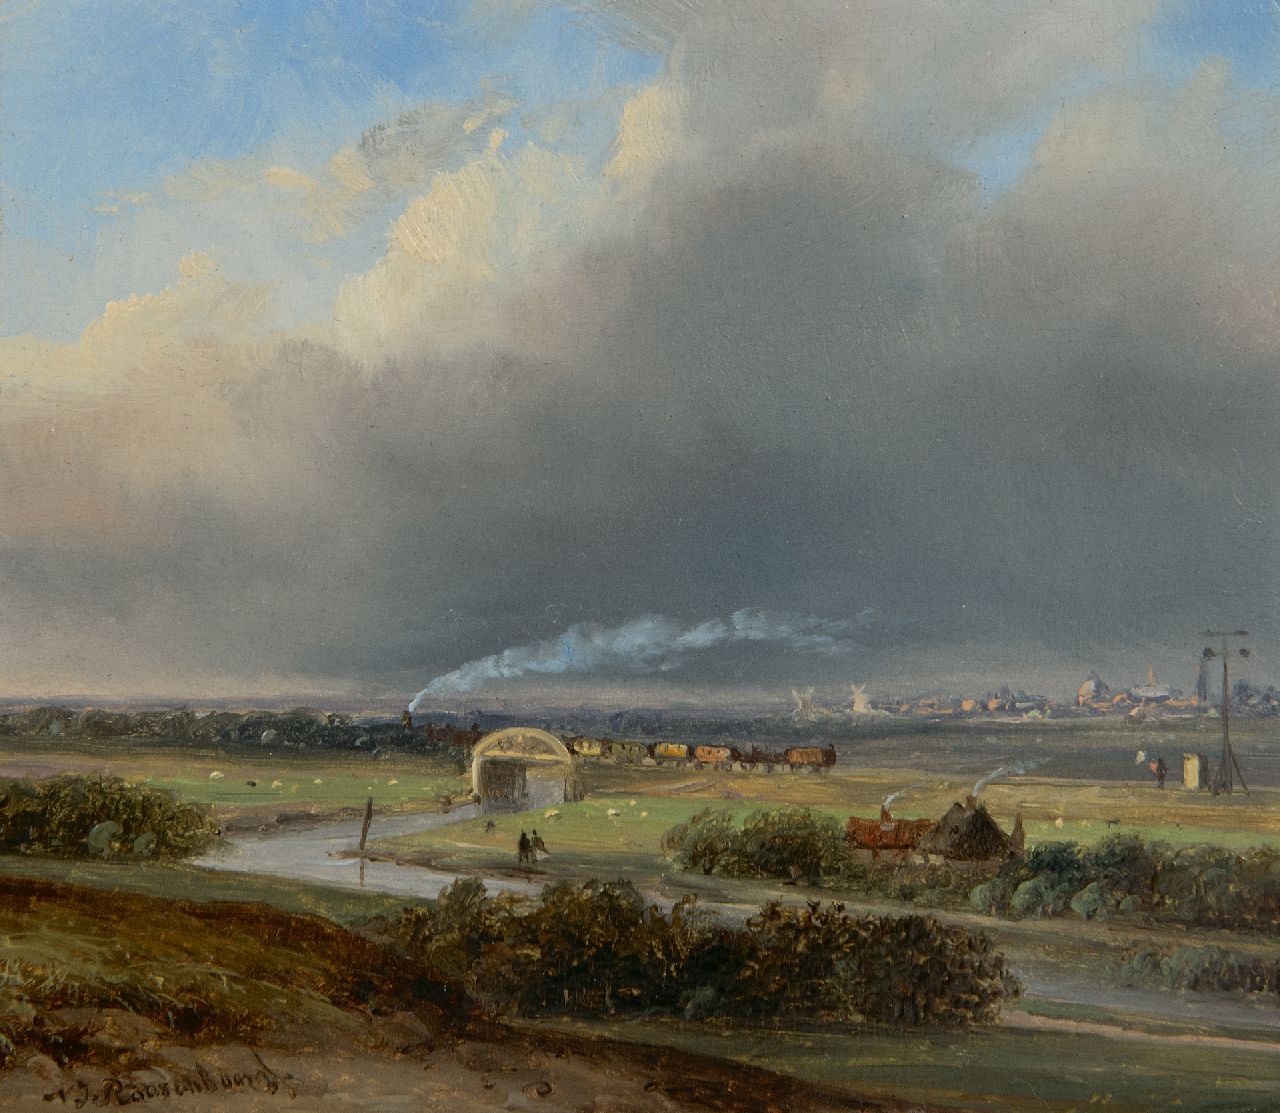 Roosenboom N.J.  | Nicolaas Johannes Roosenboom | Schilderijen te koop aangeboden | Stoomtrein in panoramisch landschap, olieverf op paneel 13,7 x 15,8 cm, gesigneerd linksonder